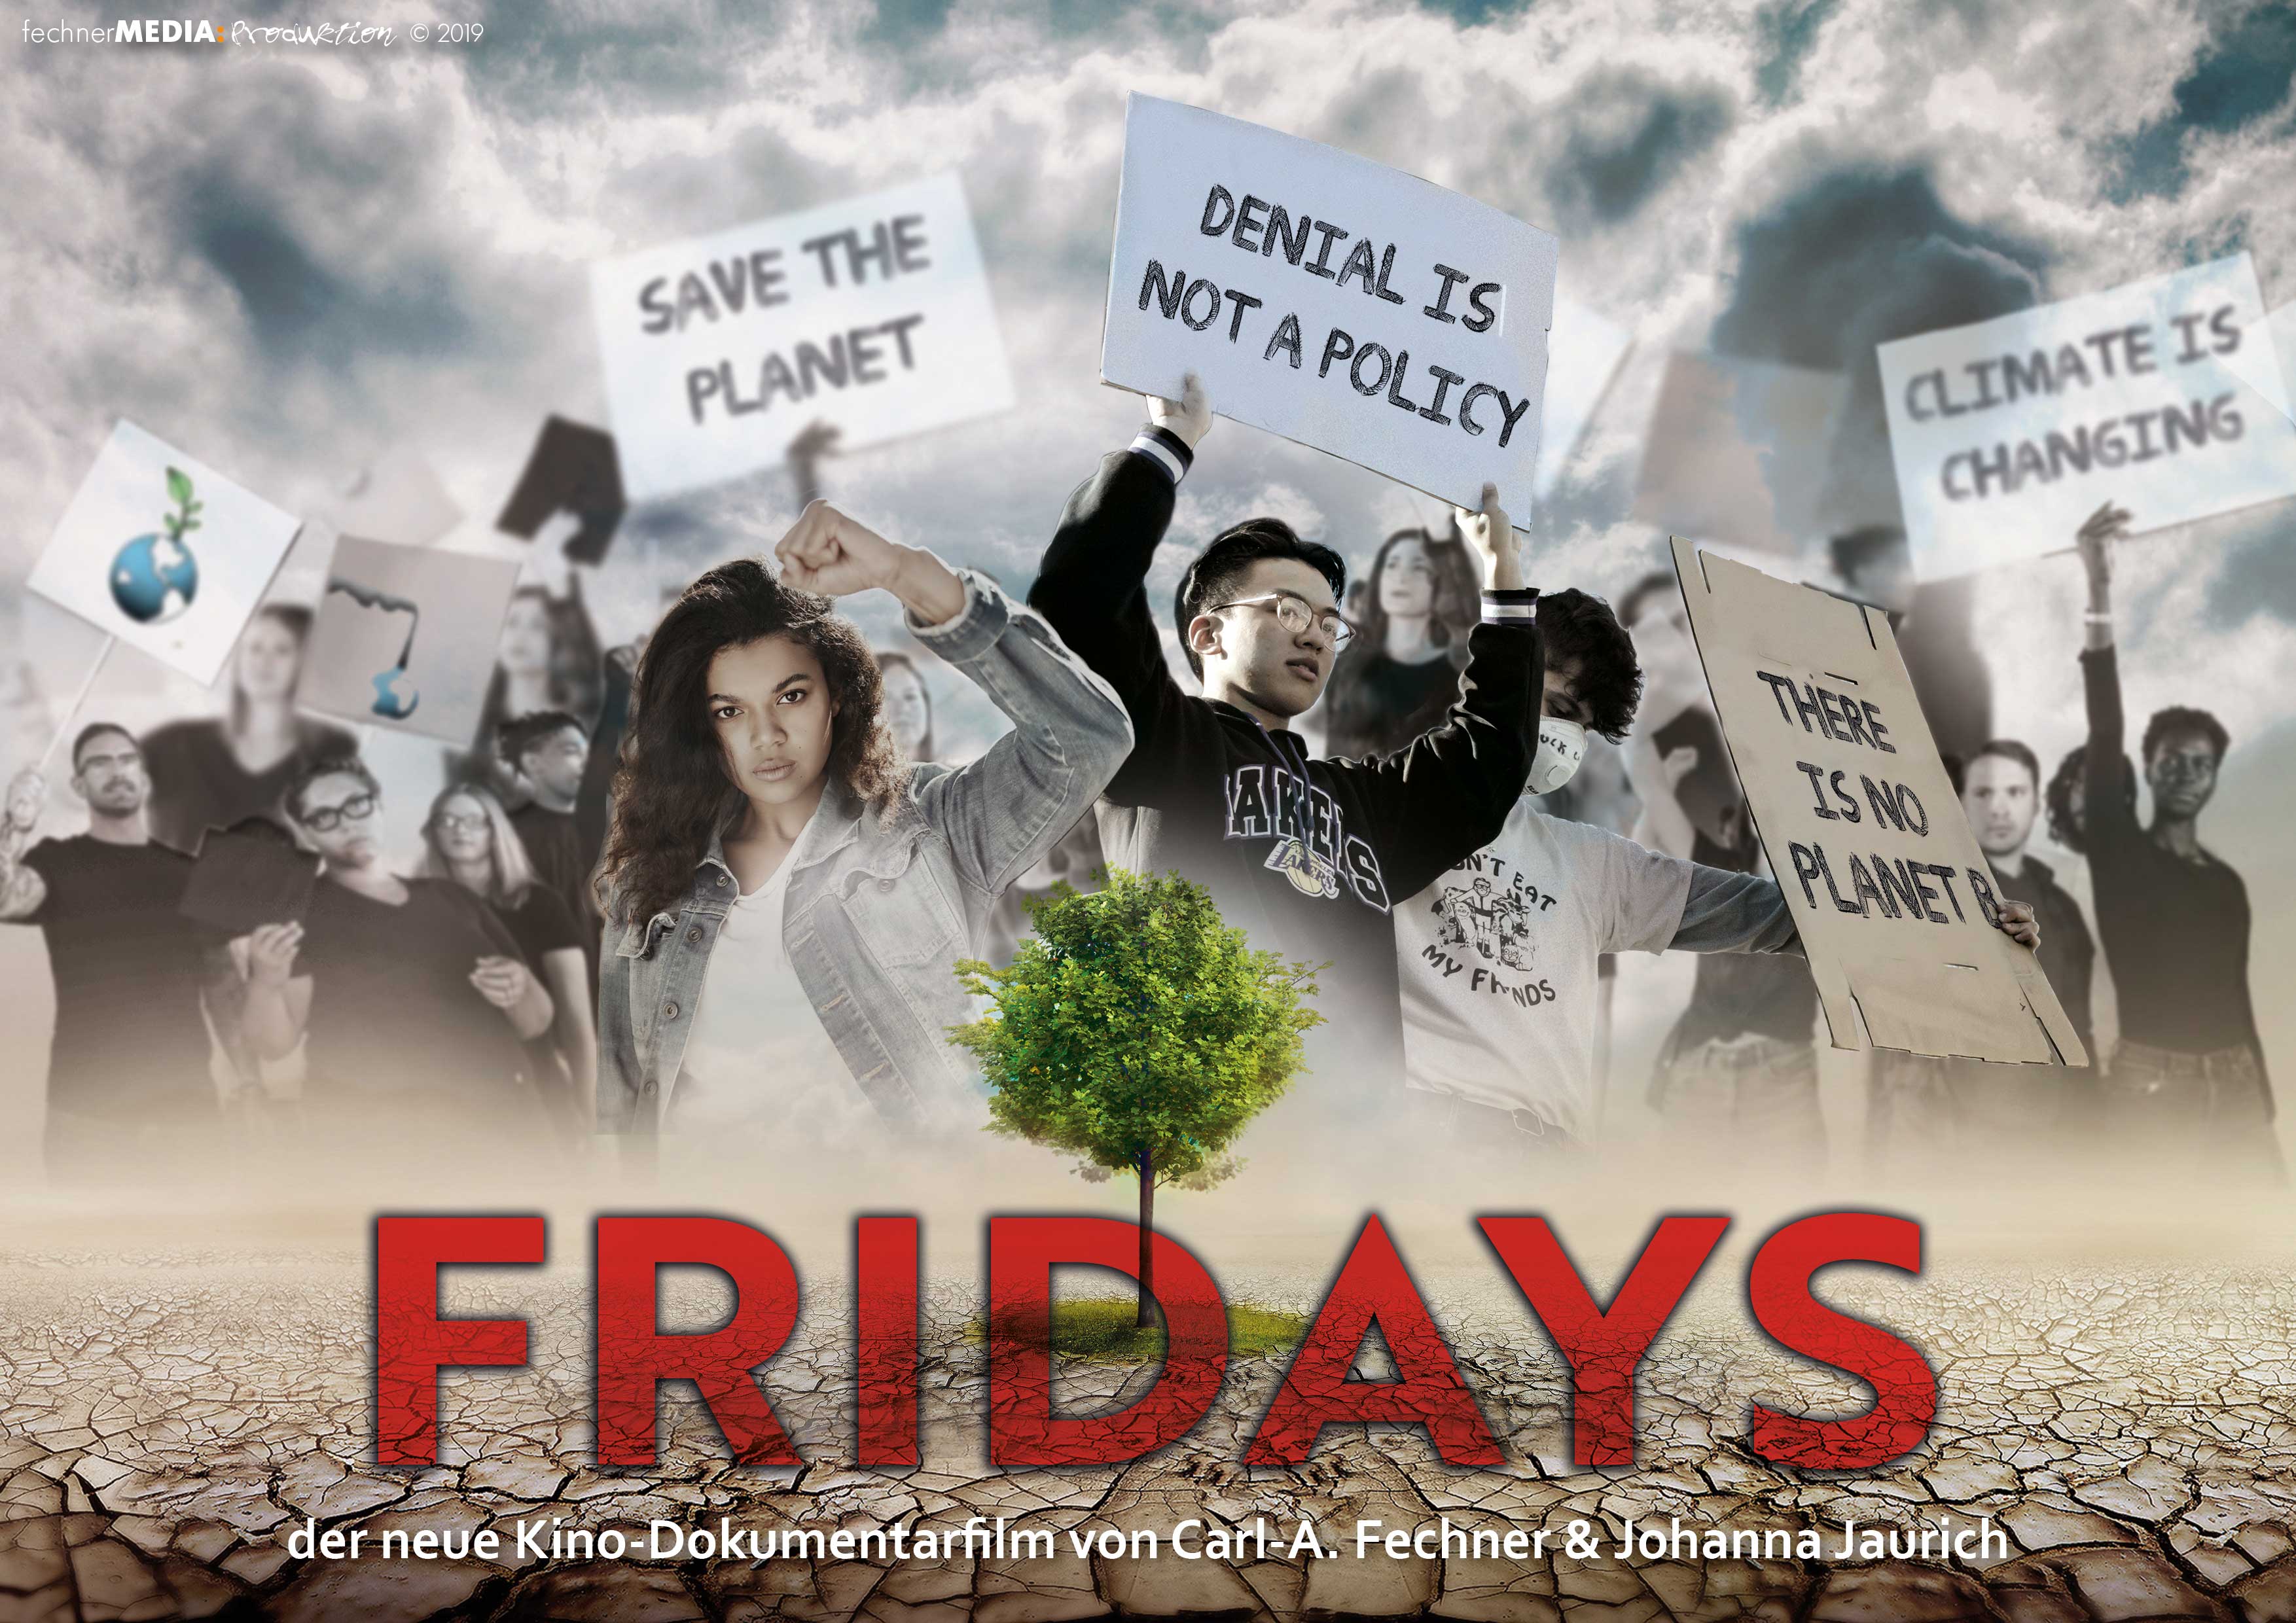 Die EthikBank empfiehlt die neue Doku Fridays.